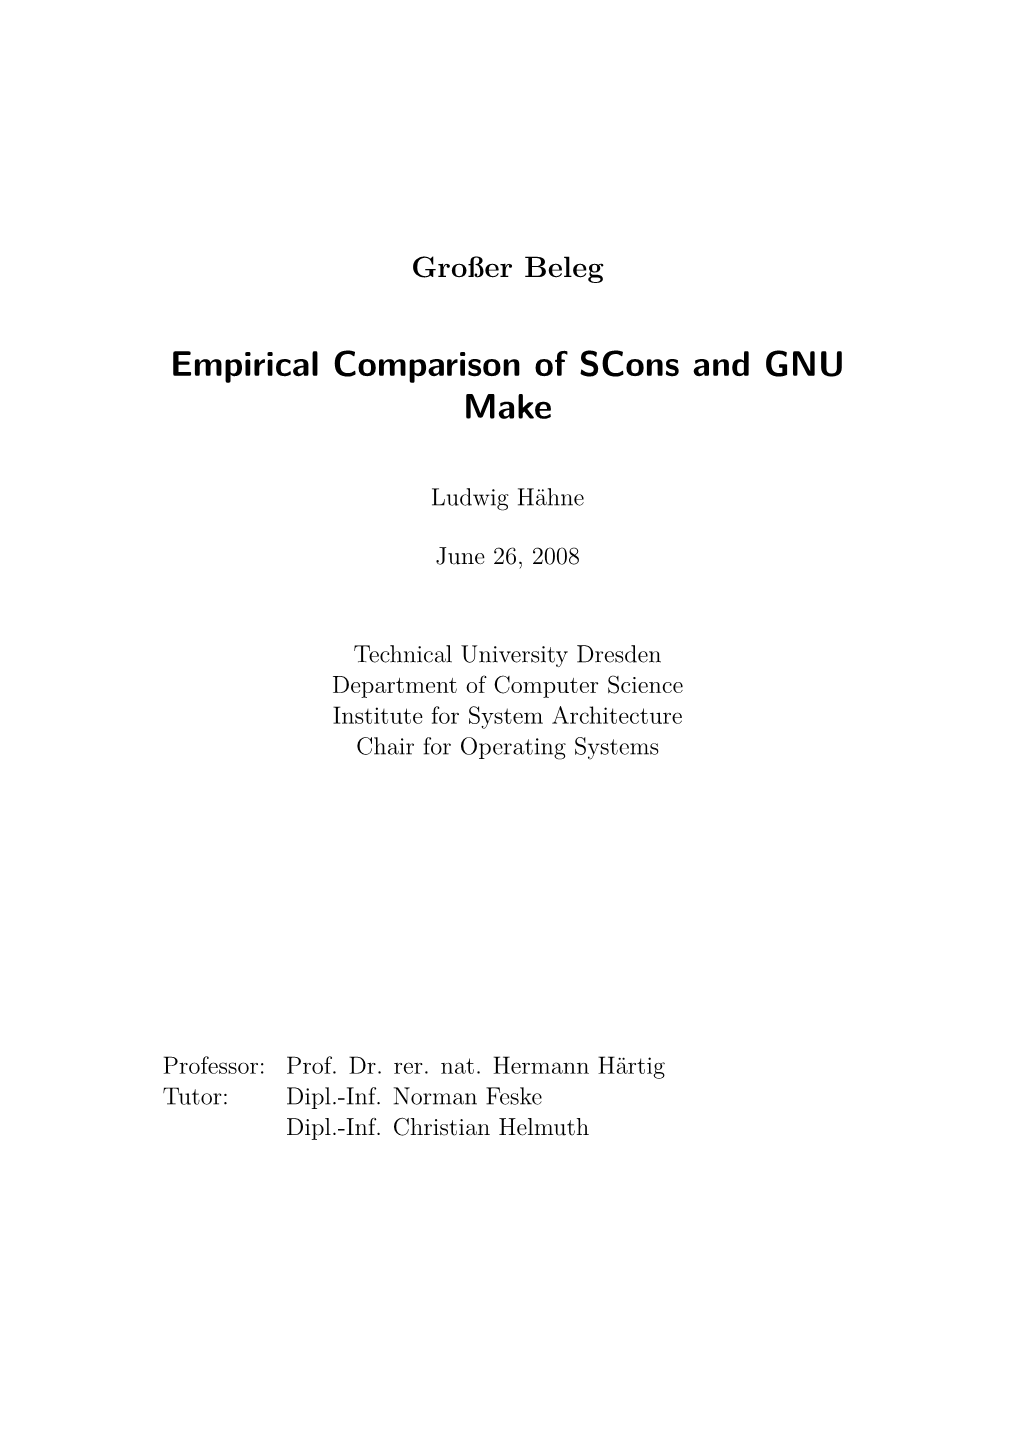 Empirical Comparison of Scons and GNU Make